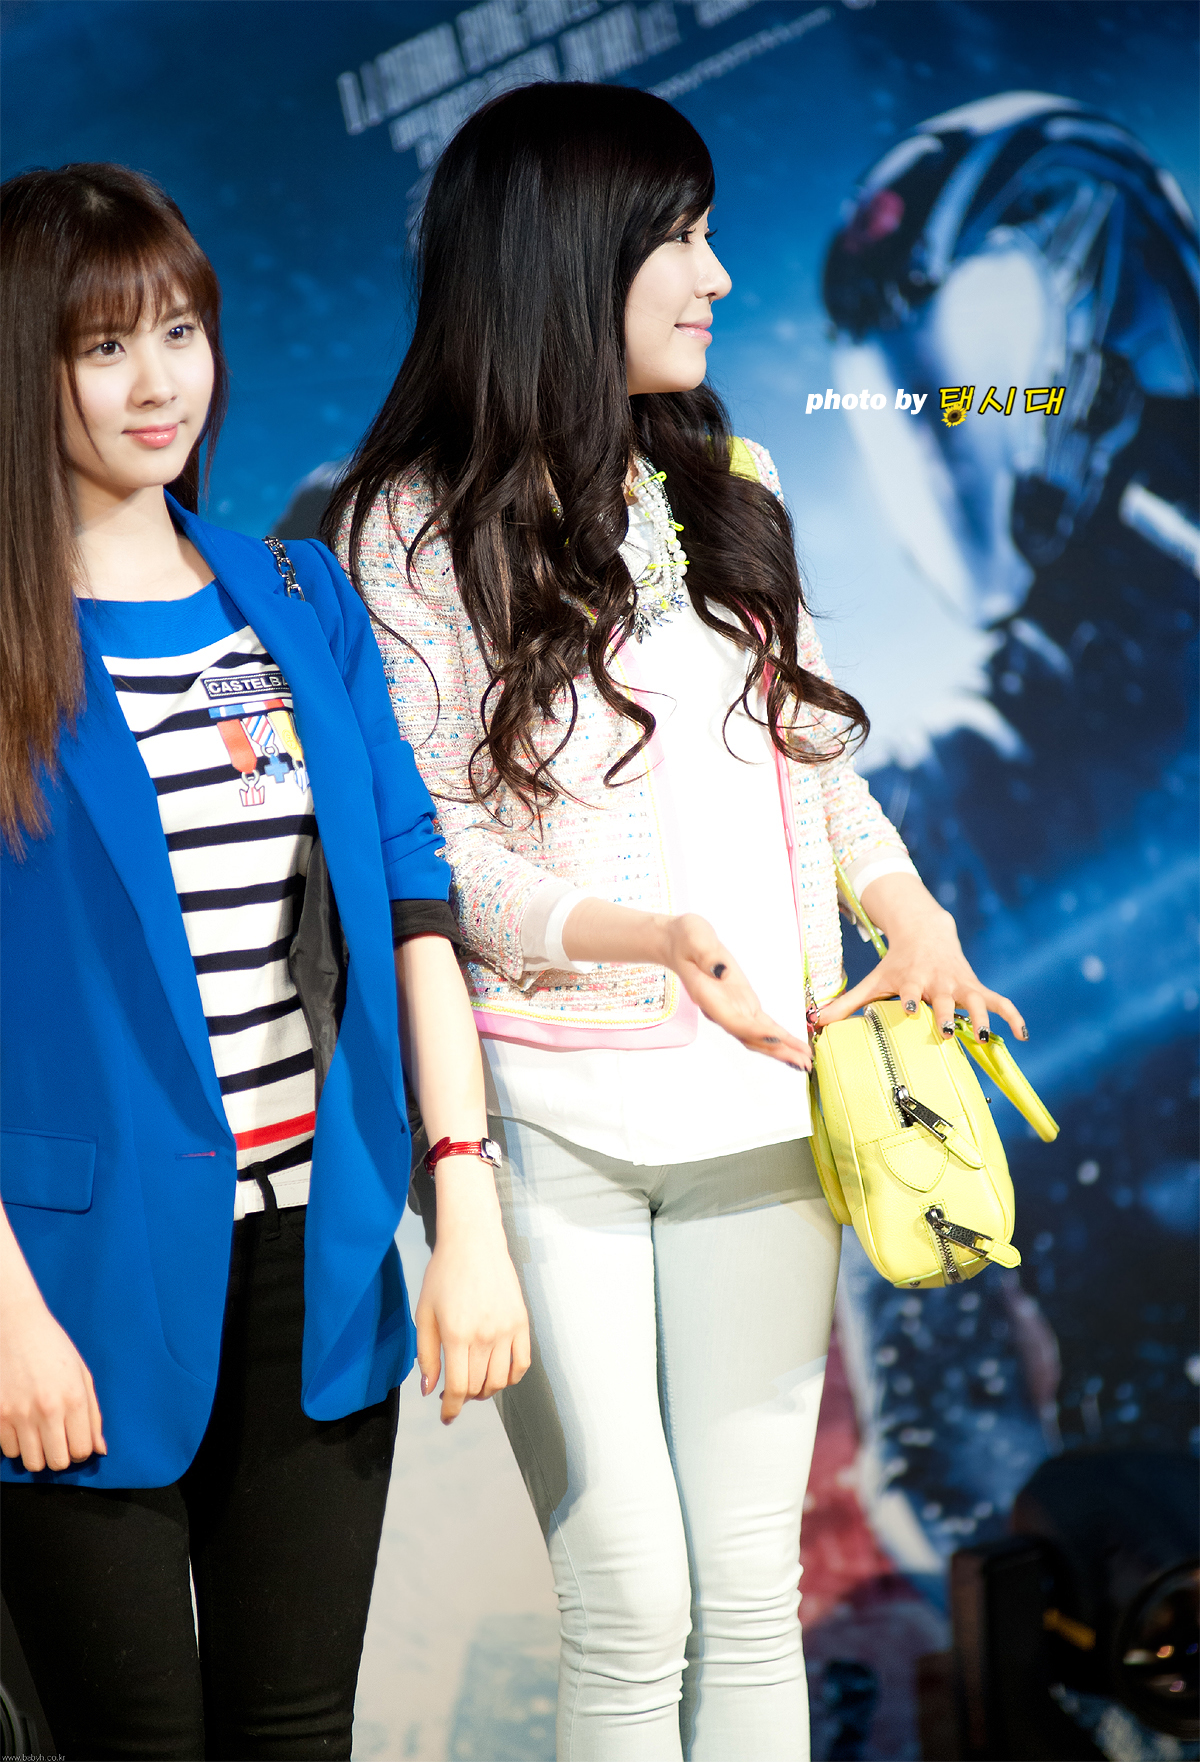 [PIC][11-03-2013]HyoYeon - SeoHyun và Tiffany xuất hiện tại buổi công chiếu bộ phim "G.I.Joe 2" vào tối nay 2553184151418AA6178930